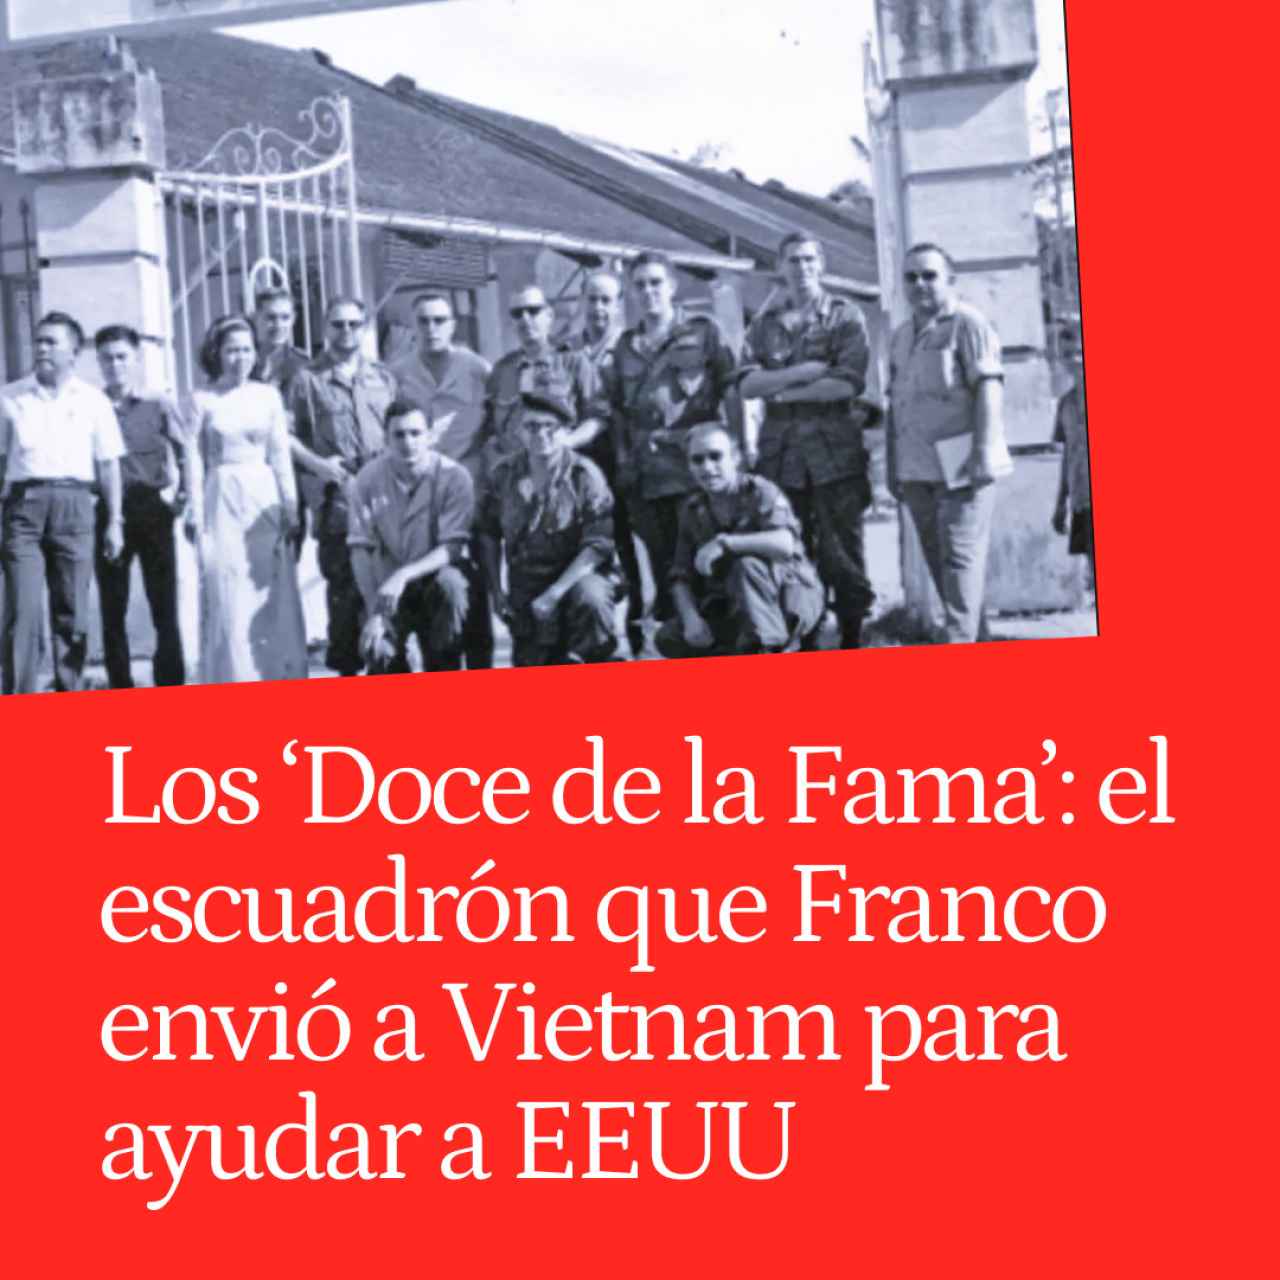 Los 'Doce de la Fama': el escuadrón que Franco envió a Vietnam para socorrer a EEUU en una guerra perdida